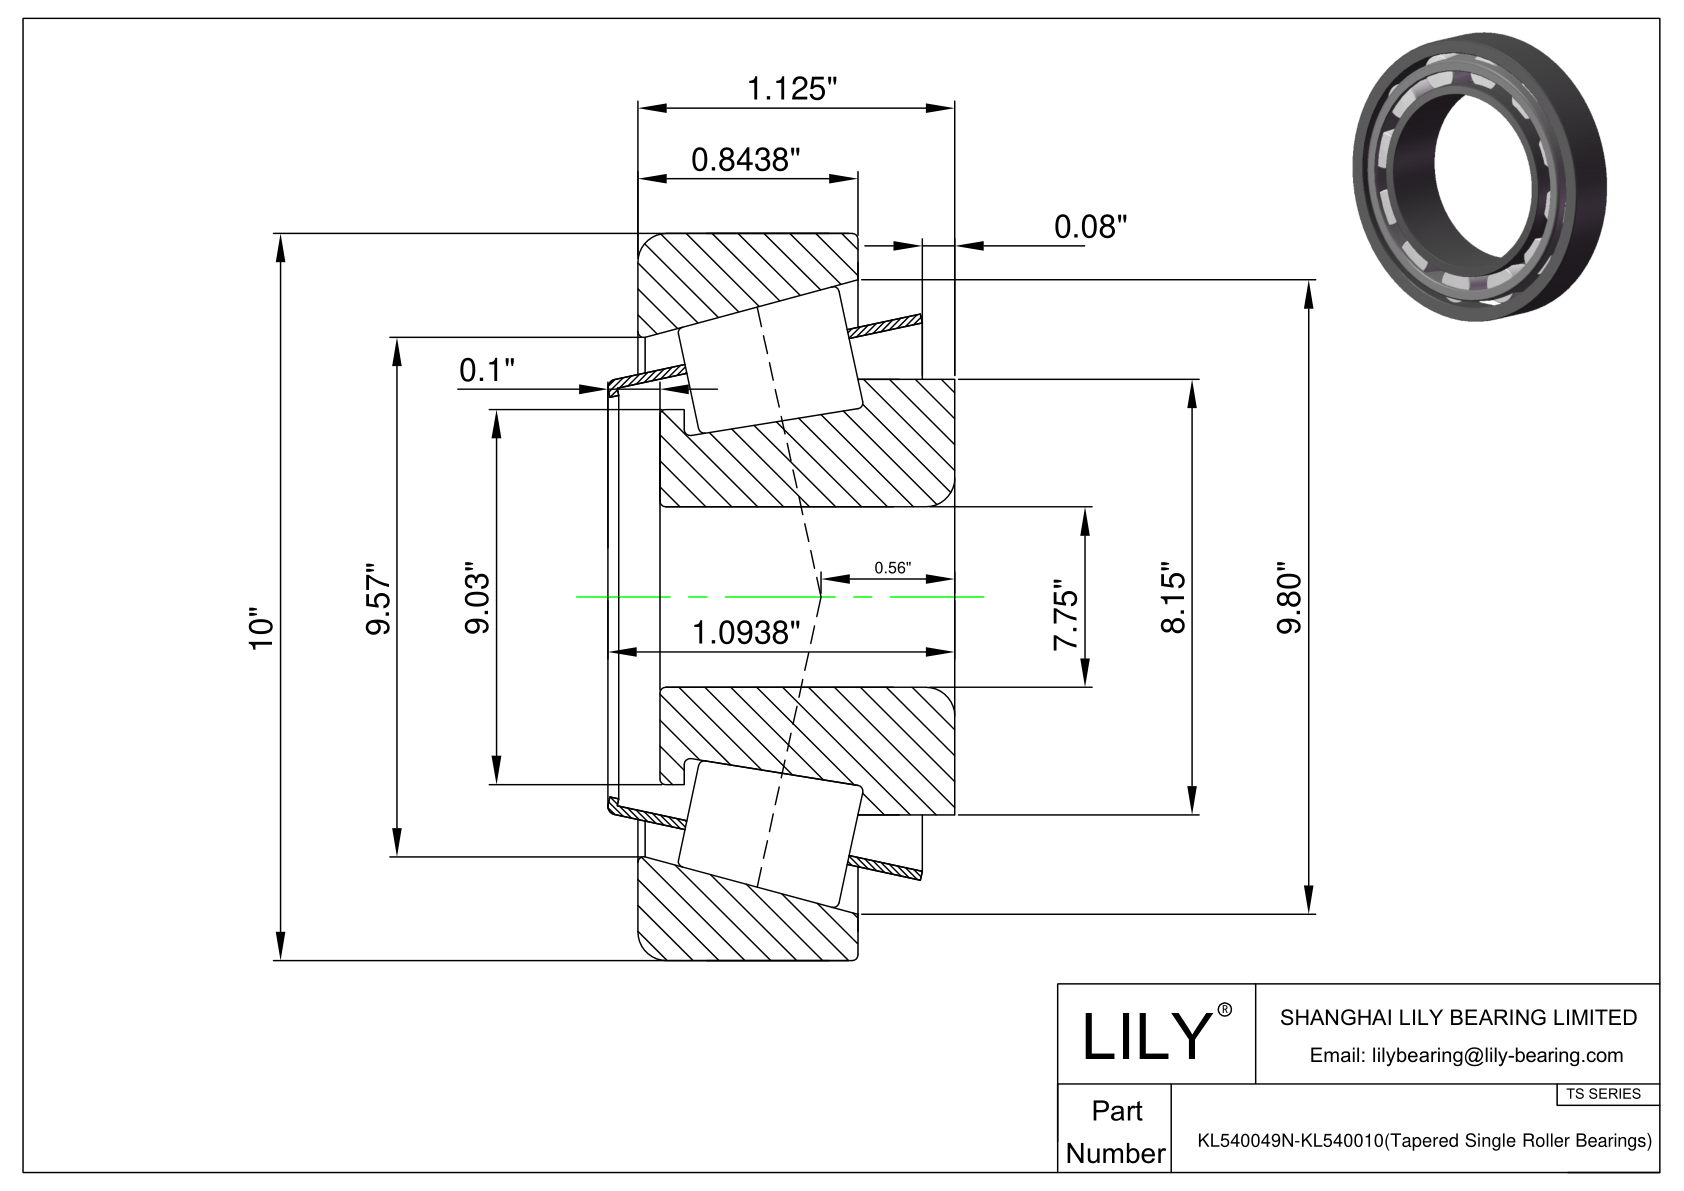 KL540049N-KL540010 TS系列(圆锥单滚子轴承)(英制) CAD图形